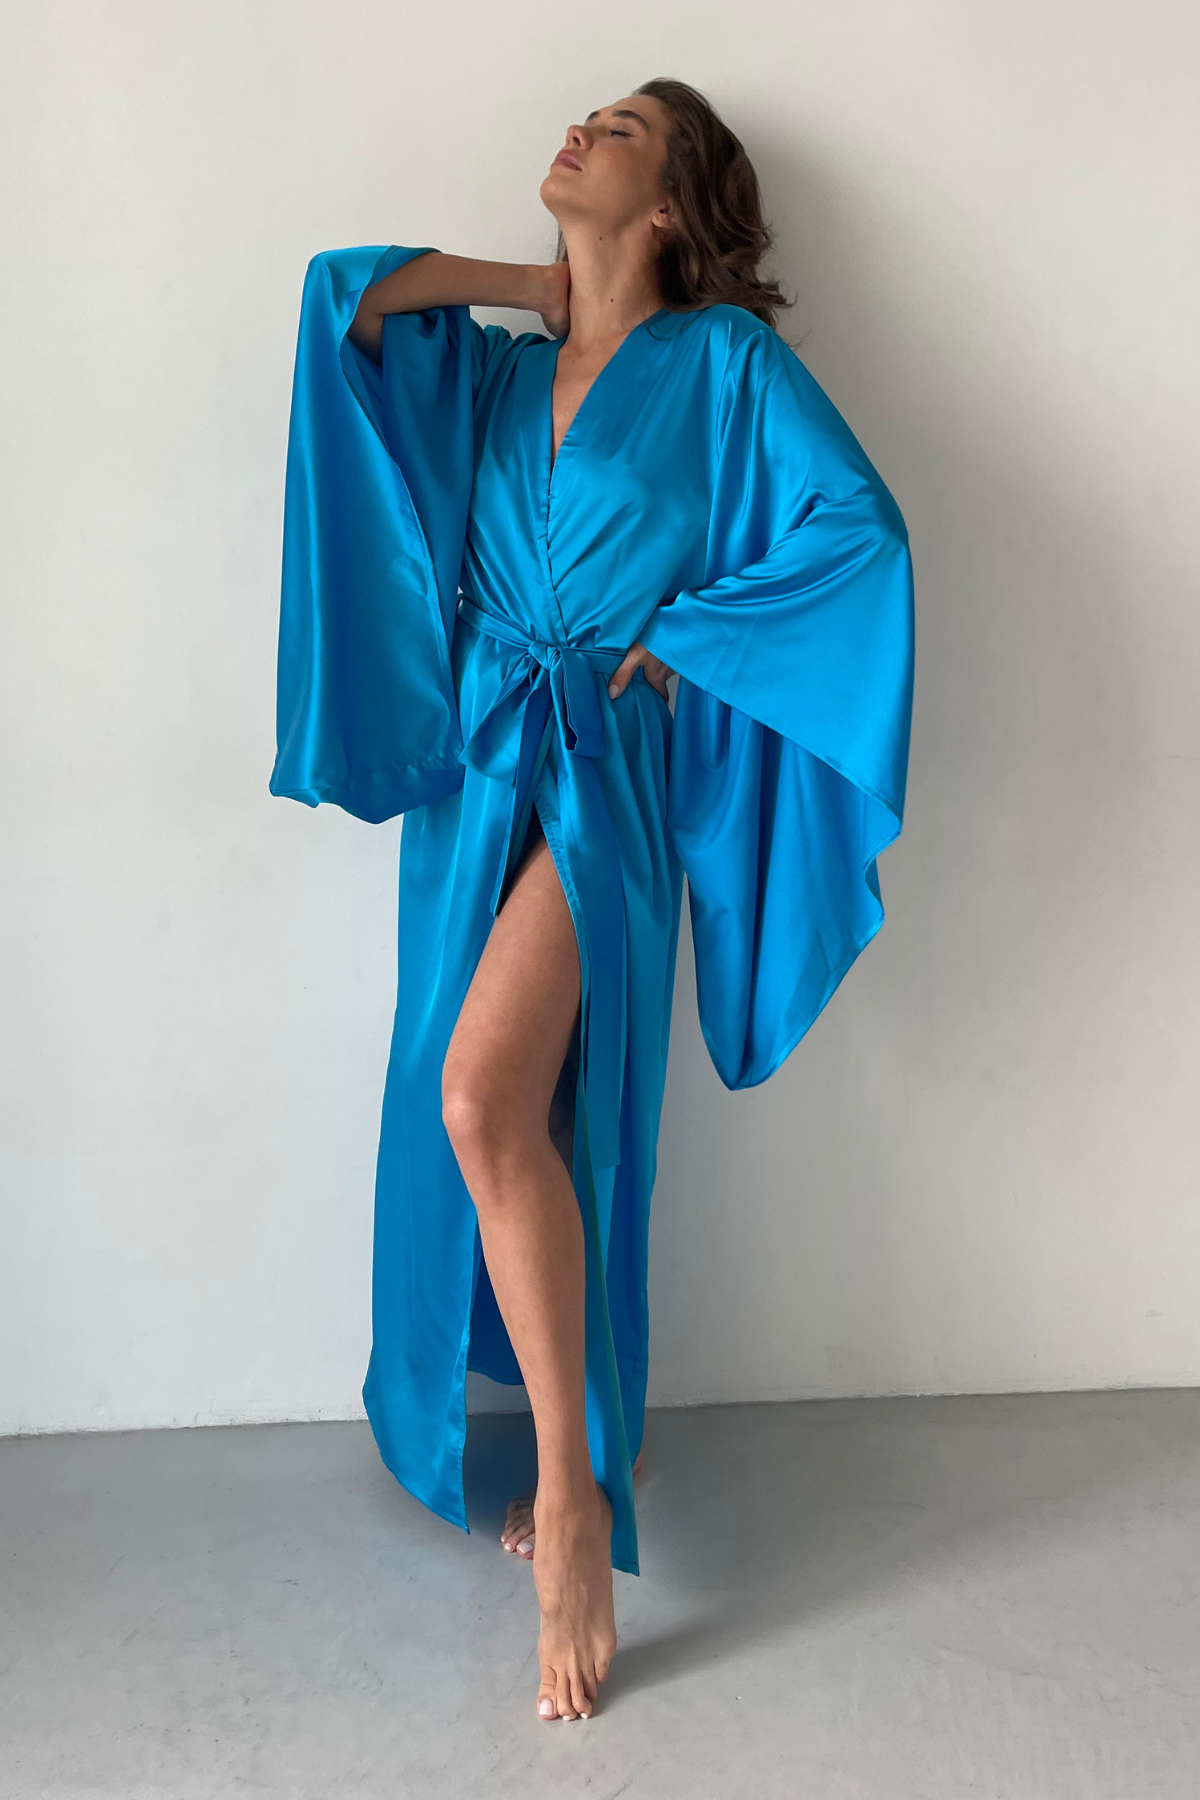 Sea Neon Blue Kimono Robe by Angie's Showroom